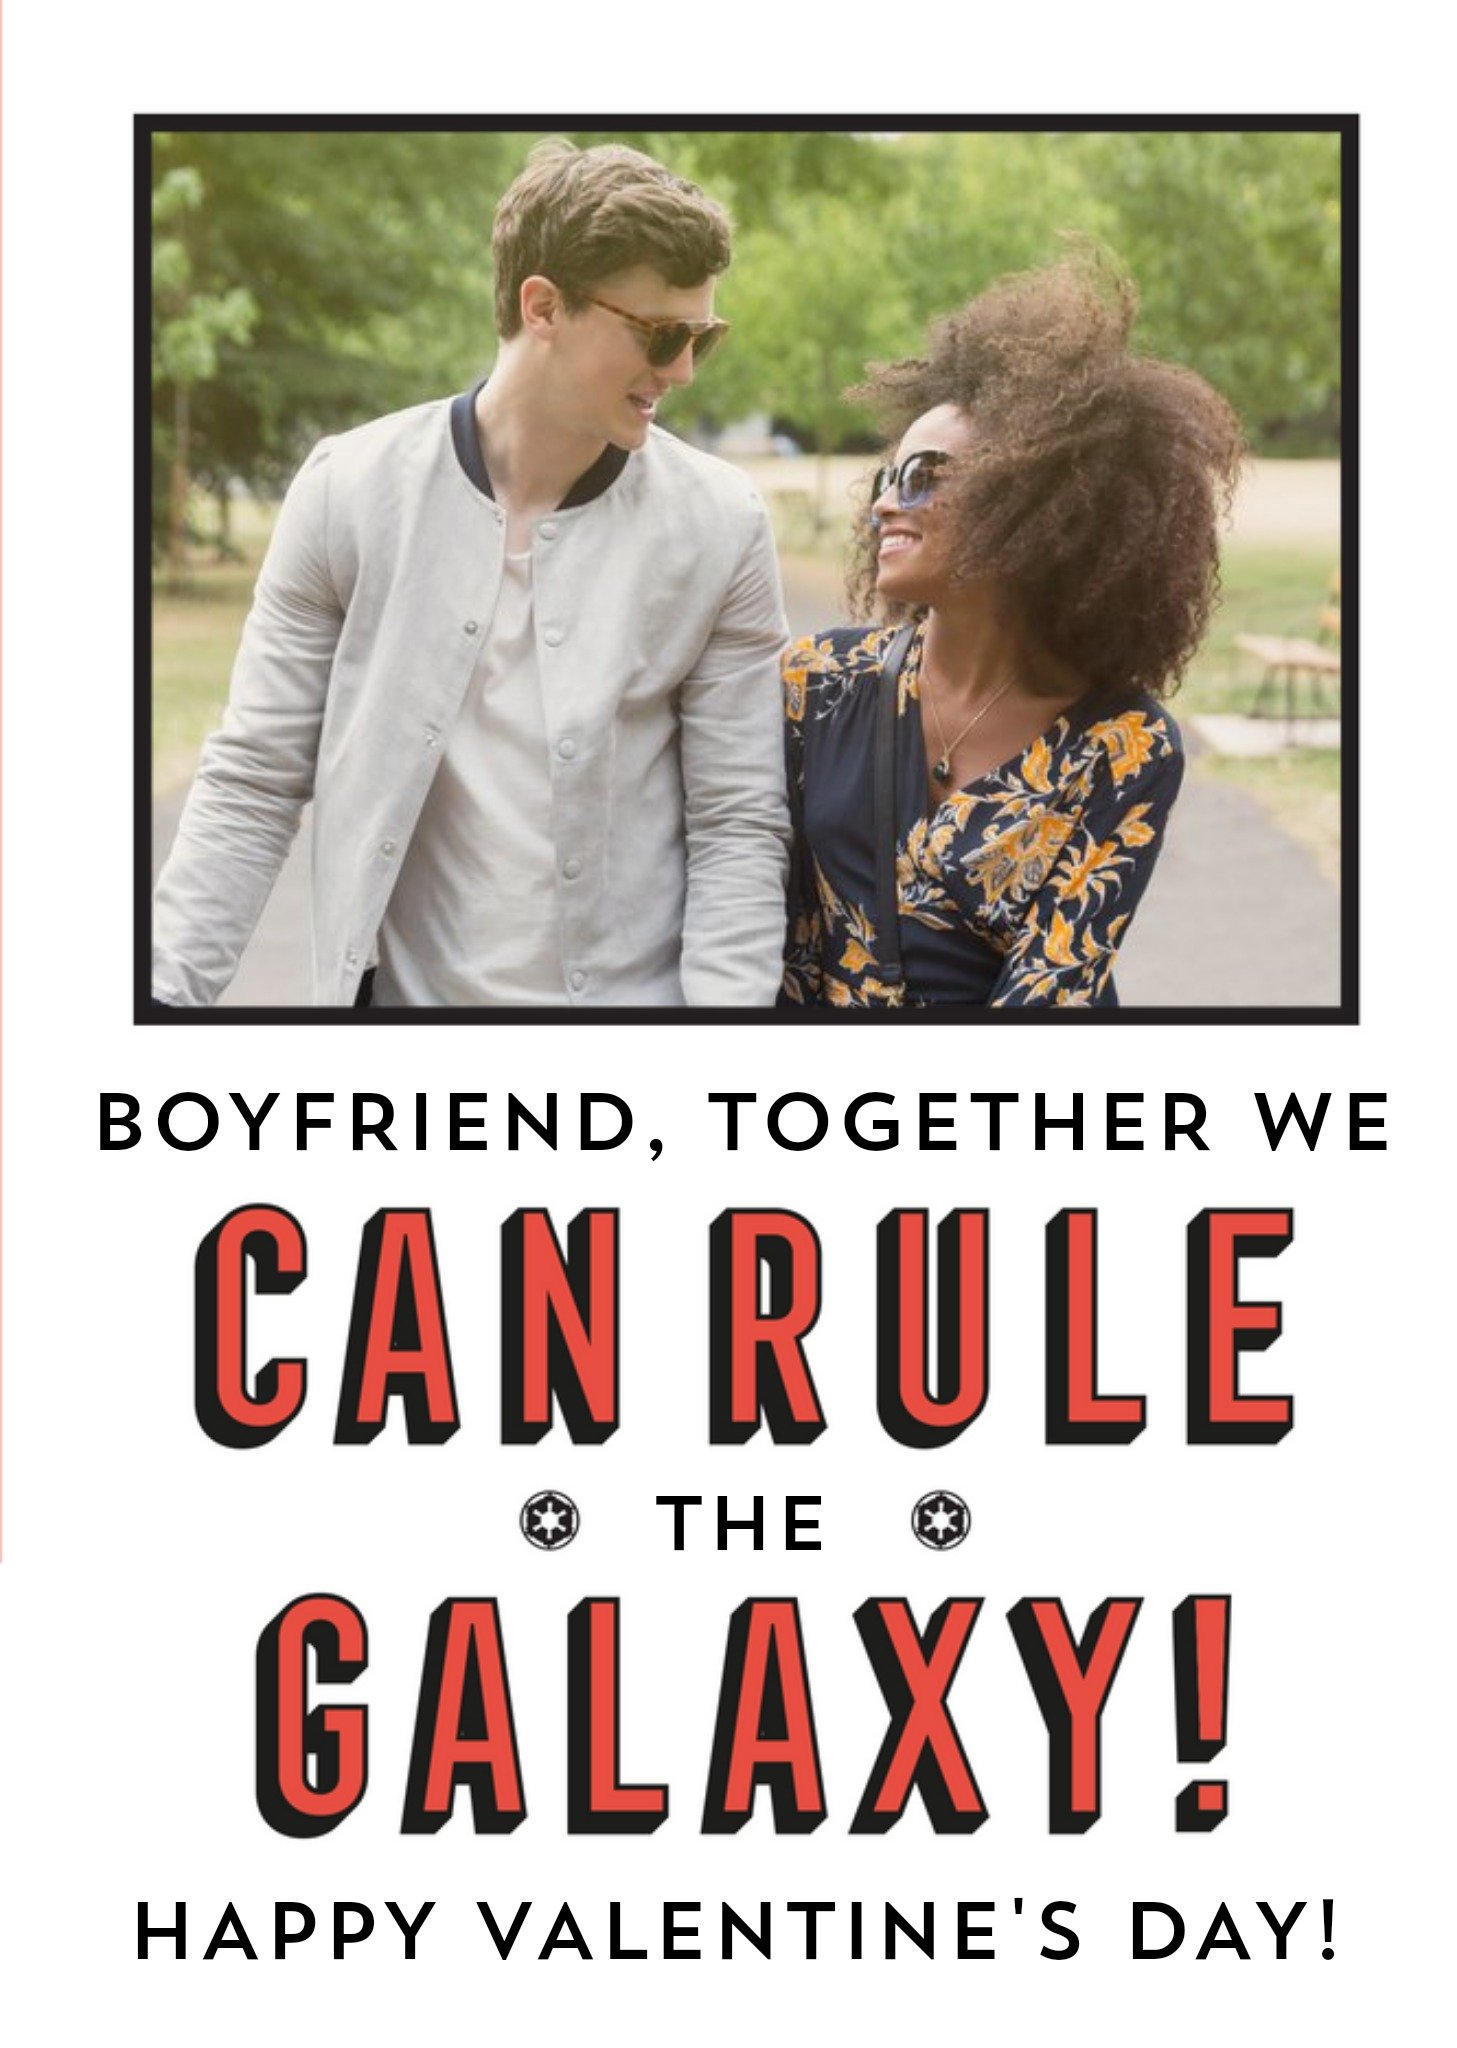 Disney Star Wars We Can Rule The Galaxy Boyfriend Valentine's Day Card Ecard